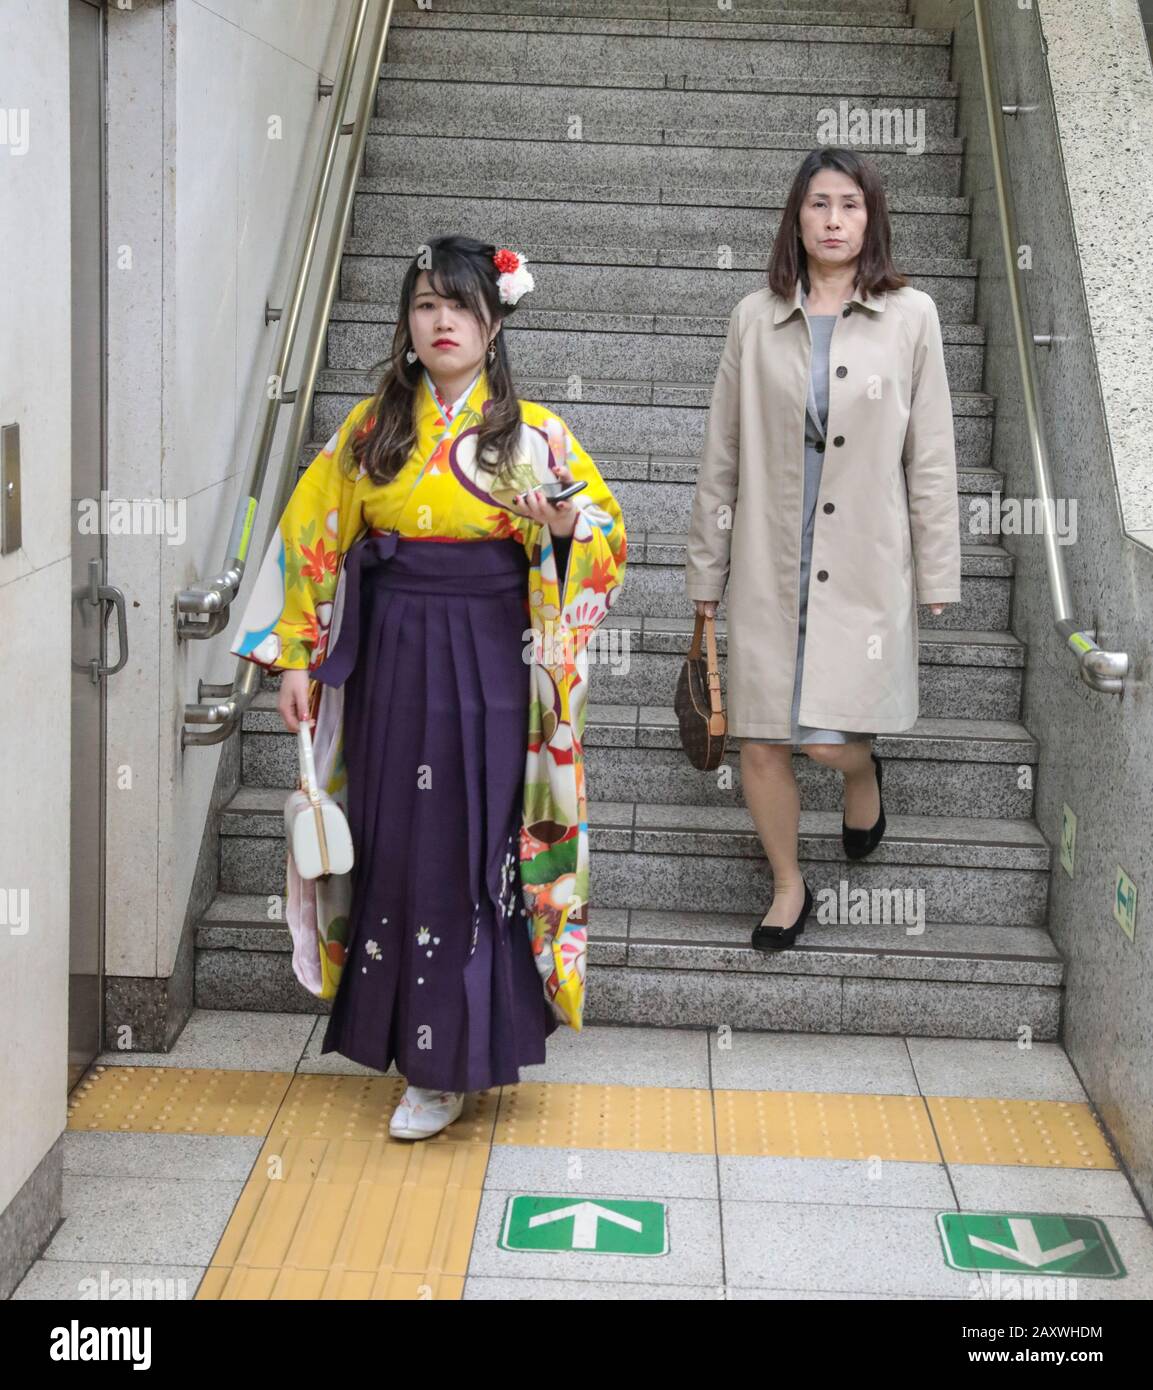 KIMONOS IN TOKYO METRO Stock Photo